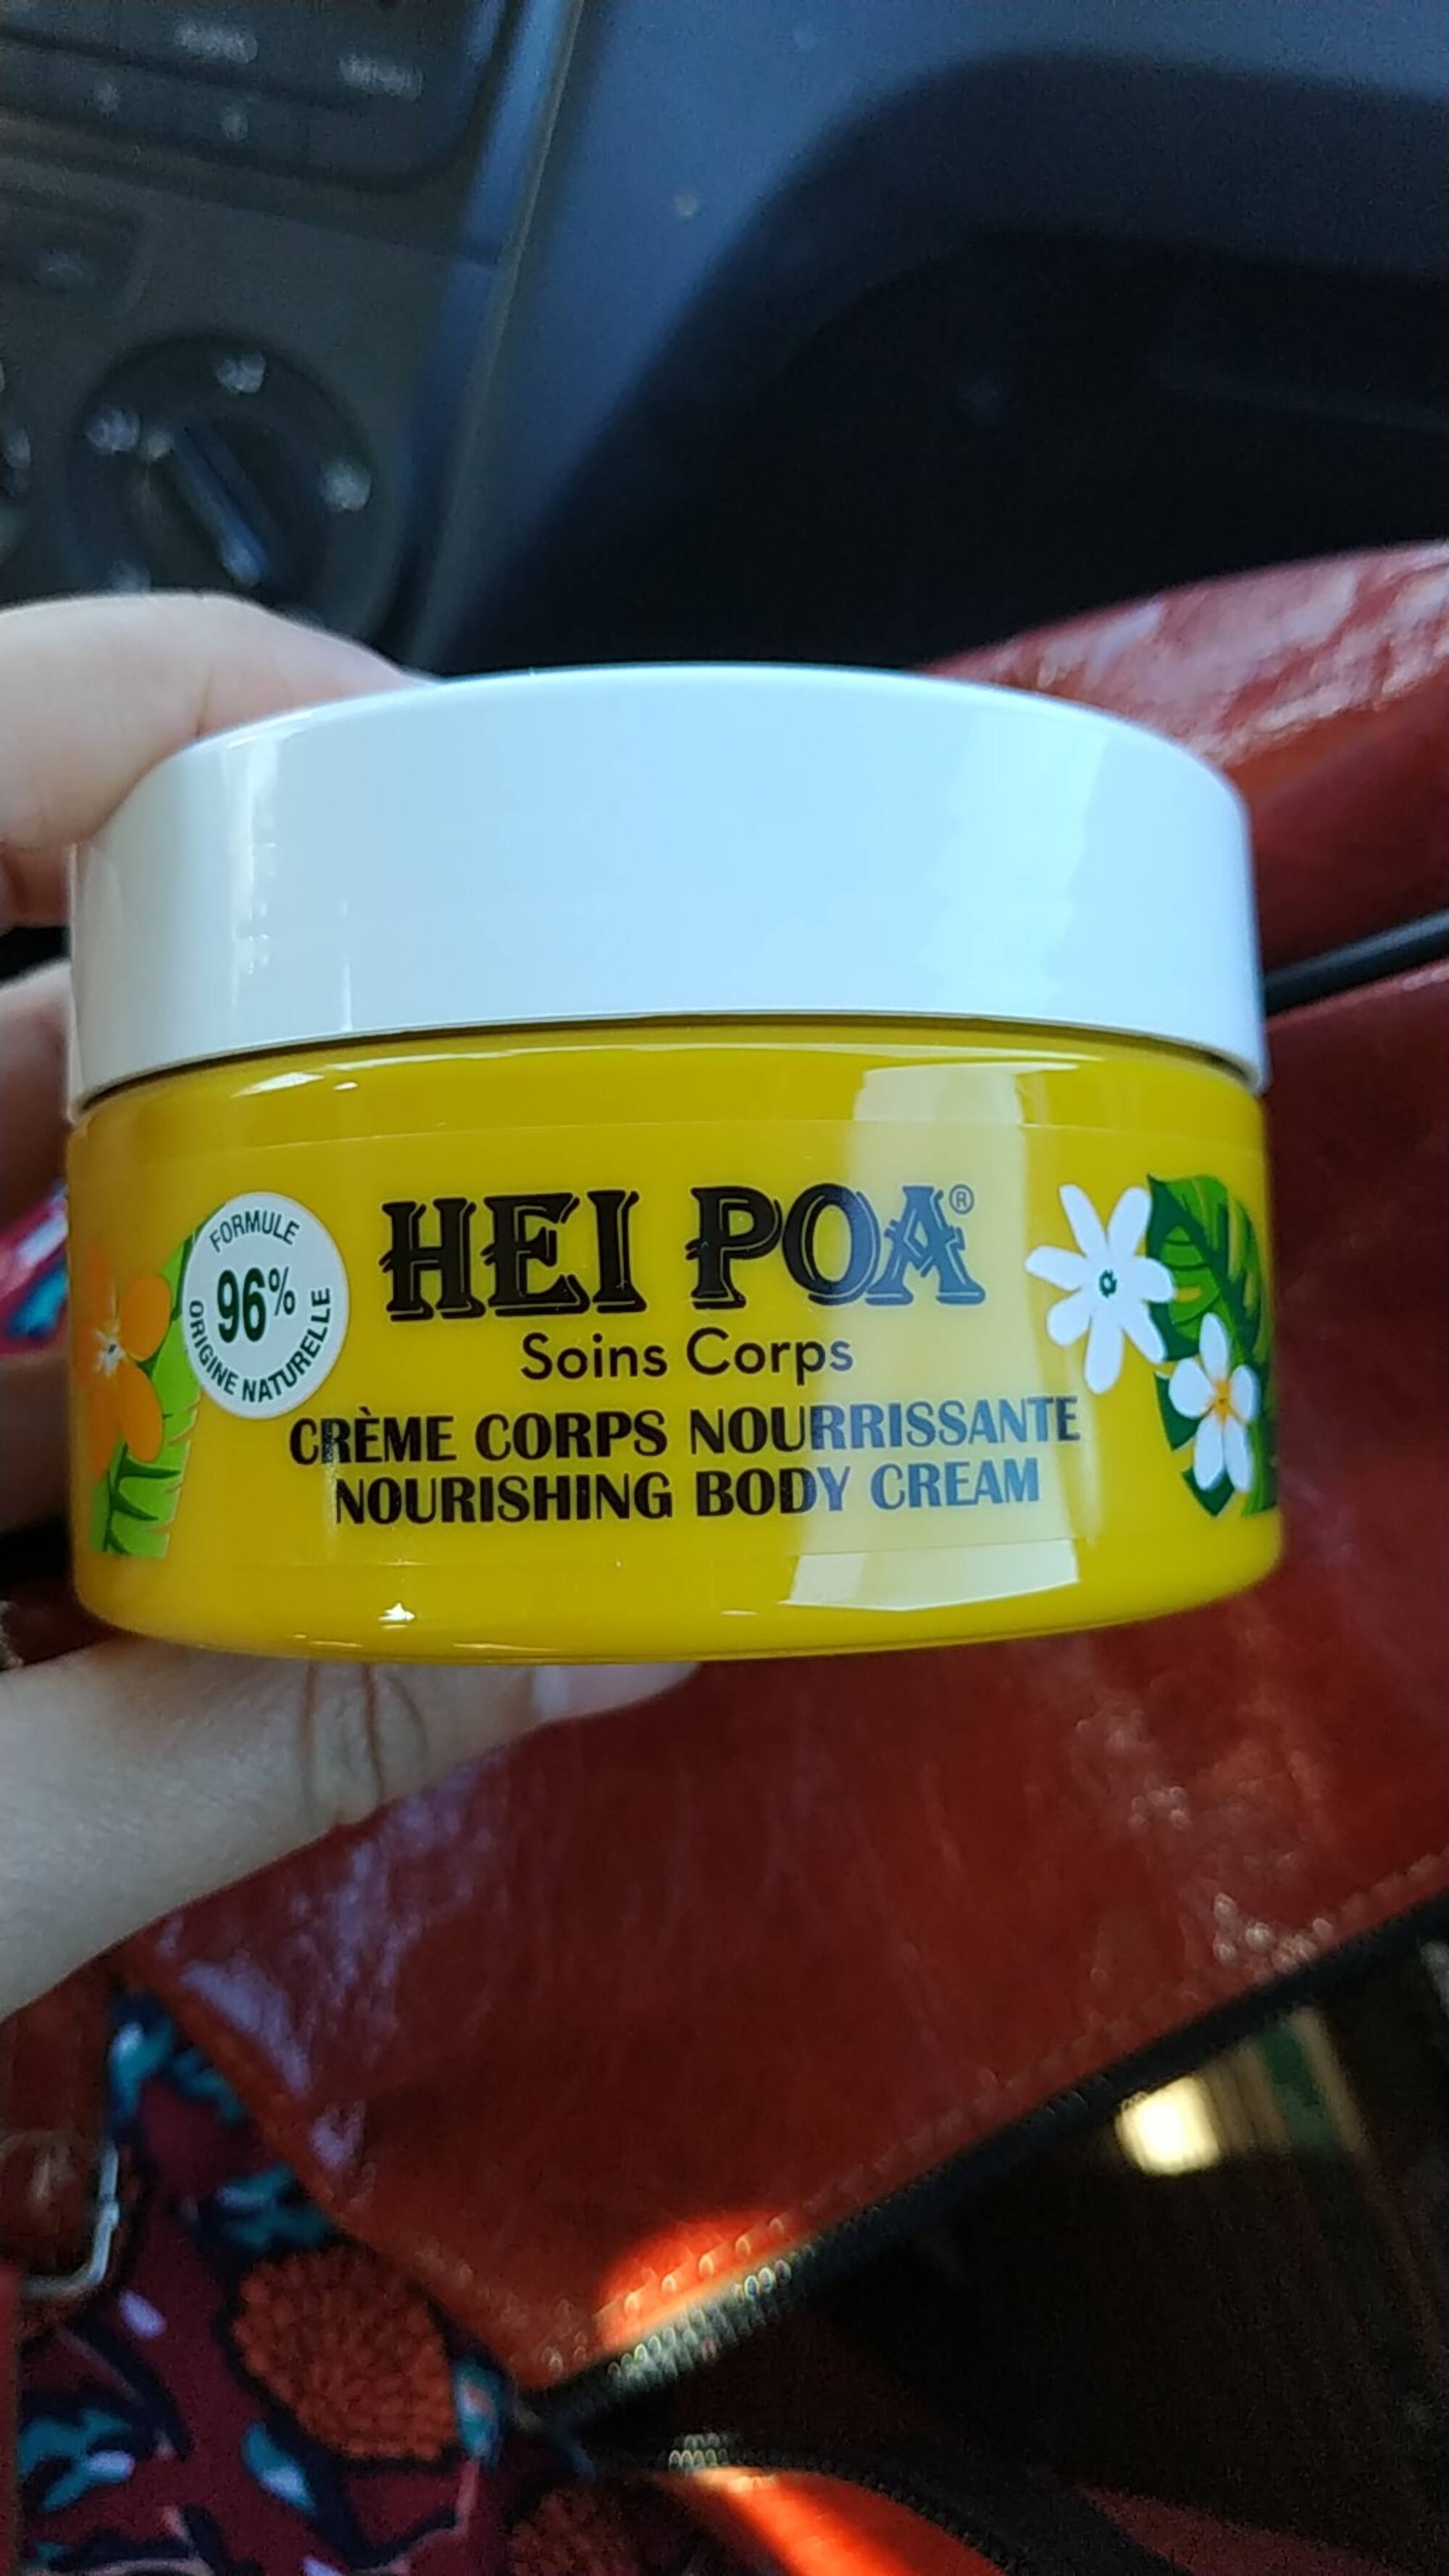 HEI POA - Crème corps nourrissante